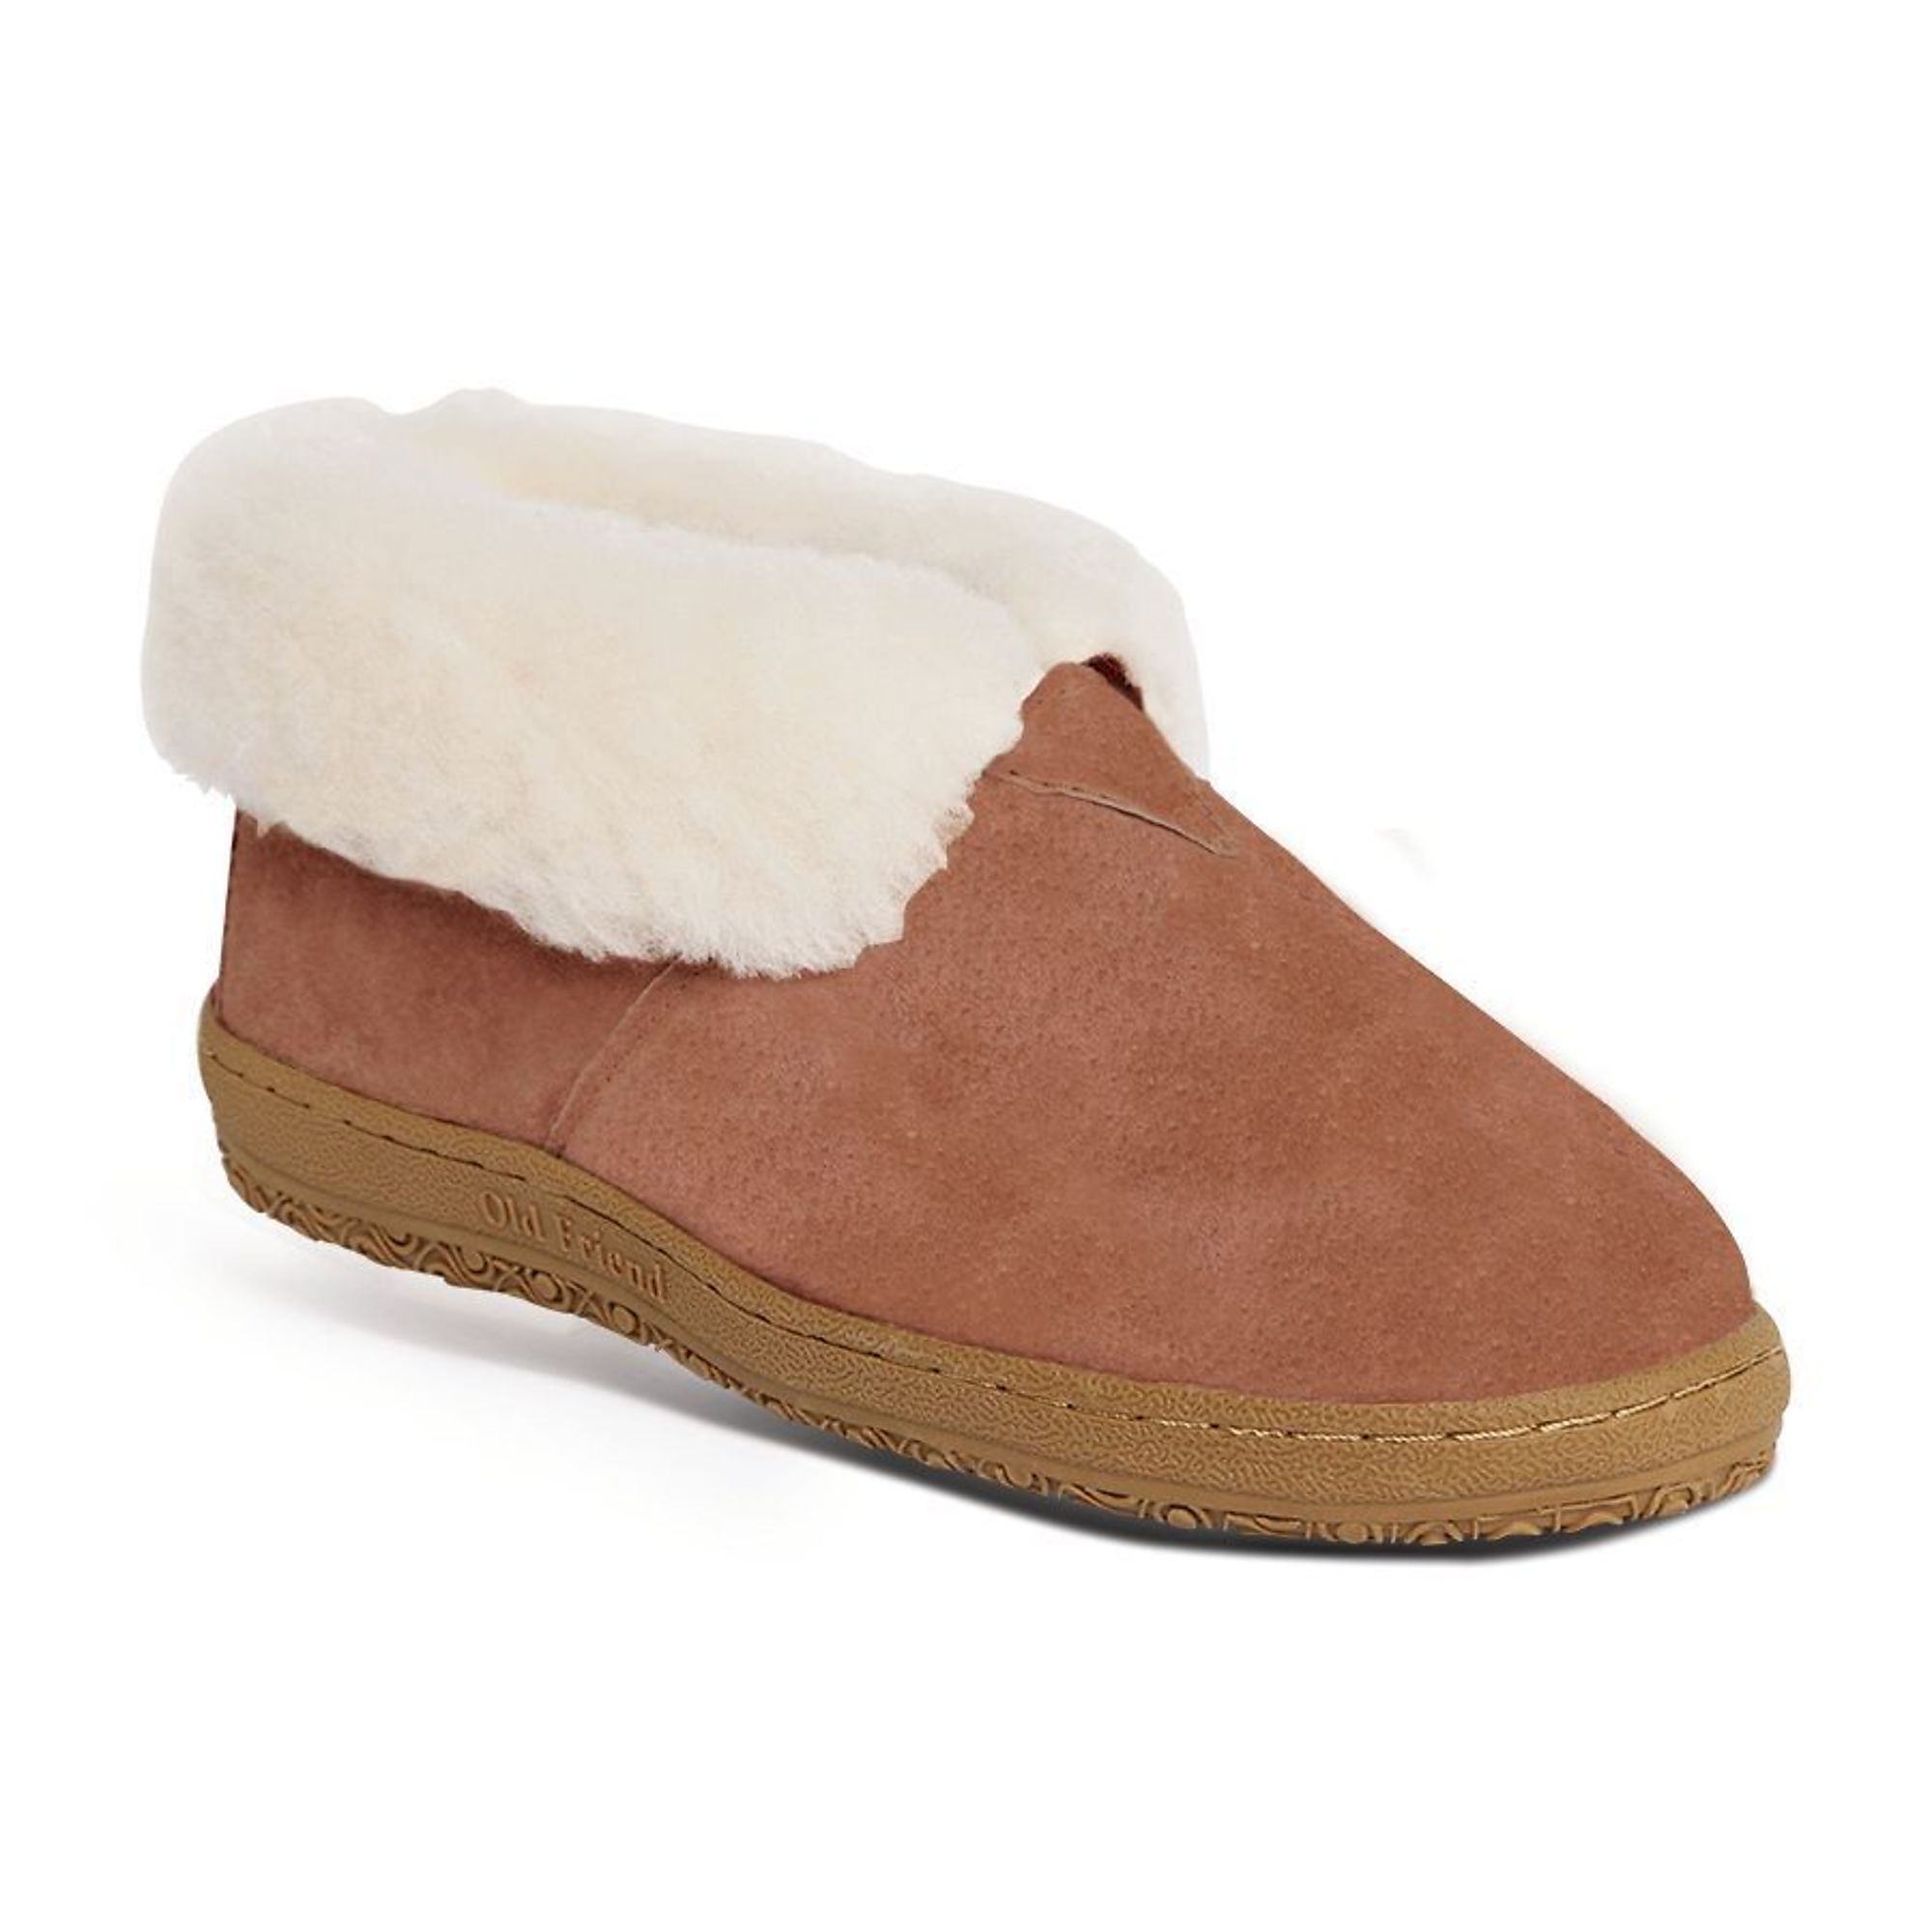 Old Friend Footwear, Womens's Wide Bootee, Sheepskin, Size 9, Width Wide, Color Chestnut, Model 441223